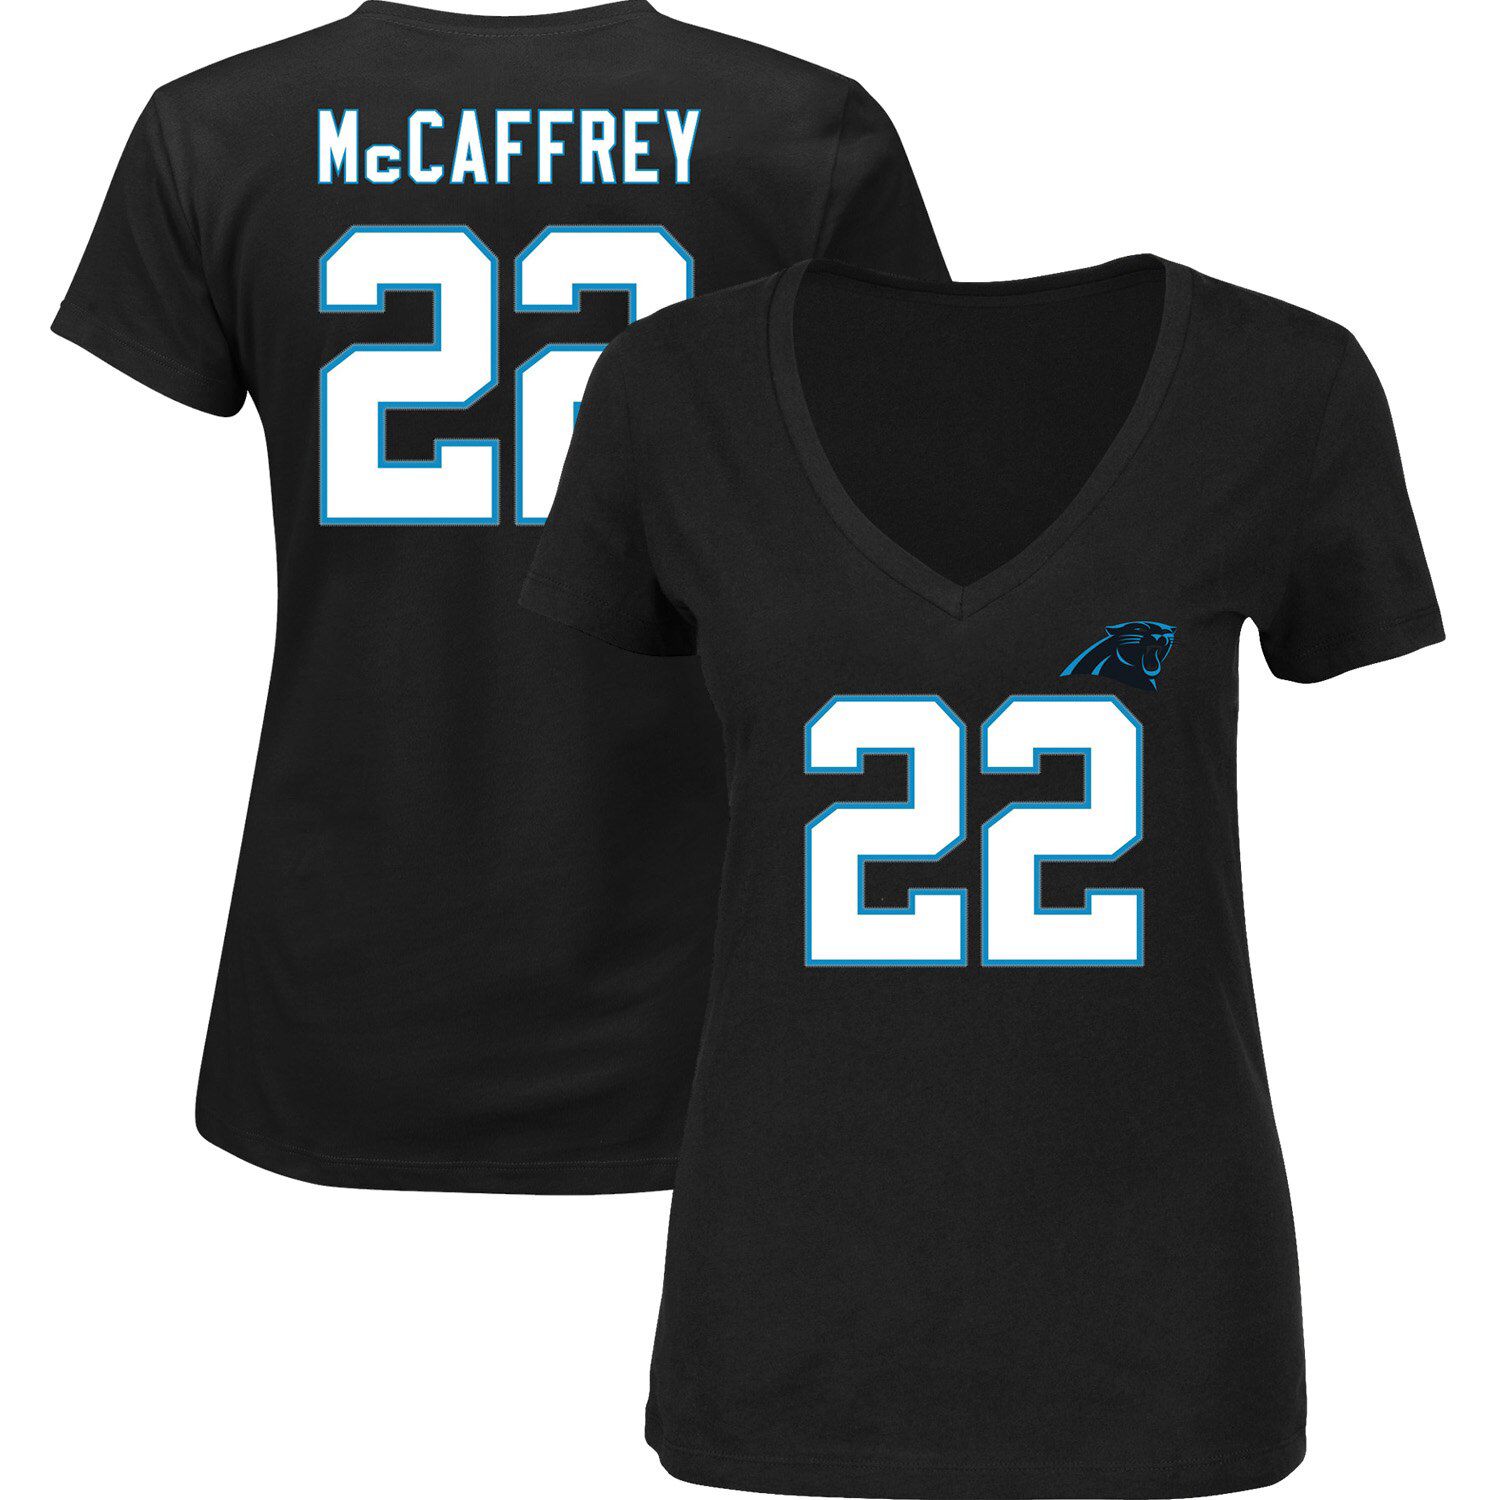 mccaffrey jersey womens